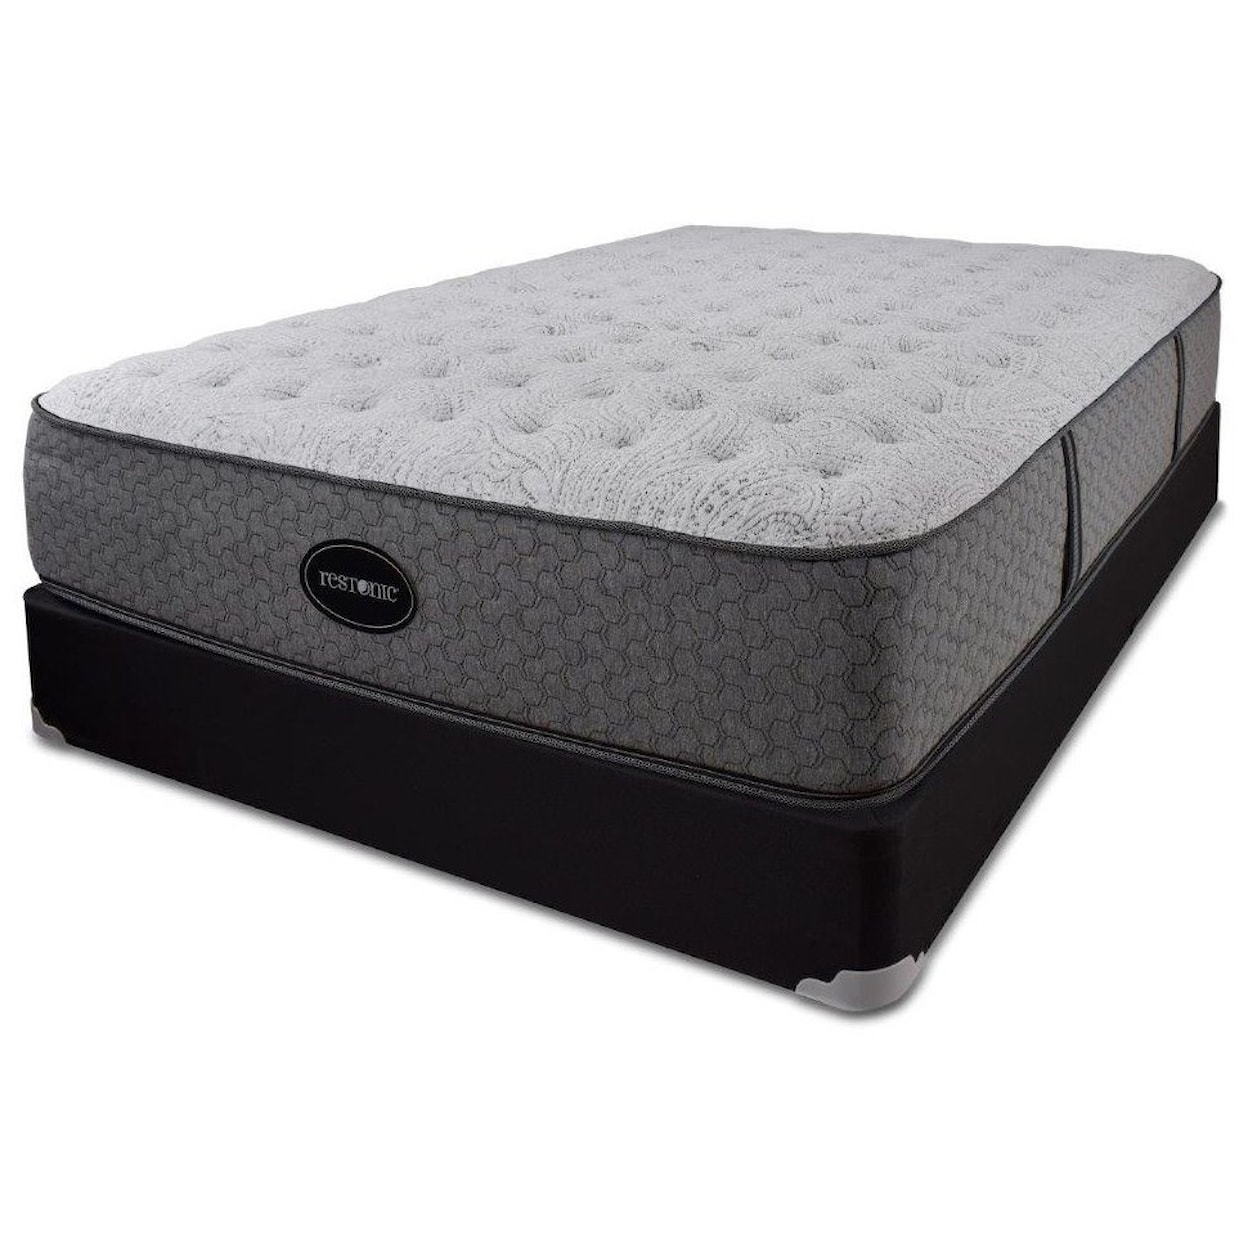 Restonic Blackcomb Cushion Firm Twin XL Comfort Firm Mattress Set